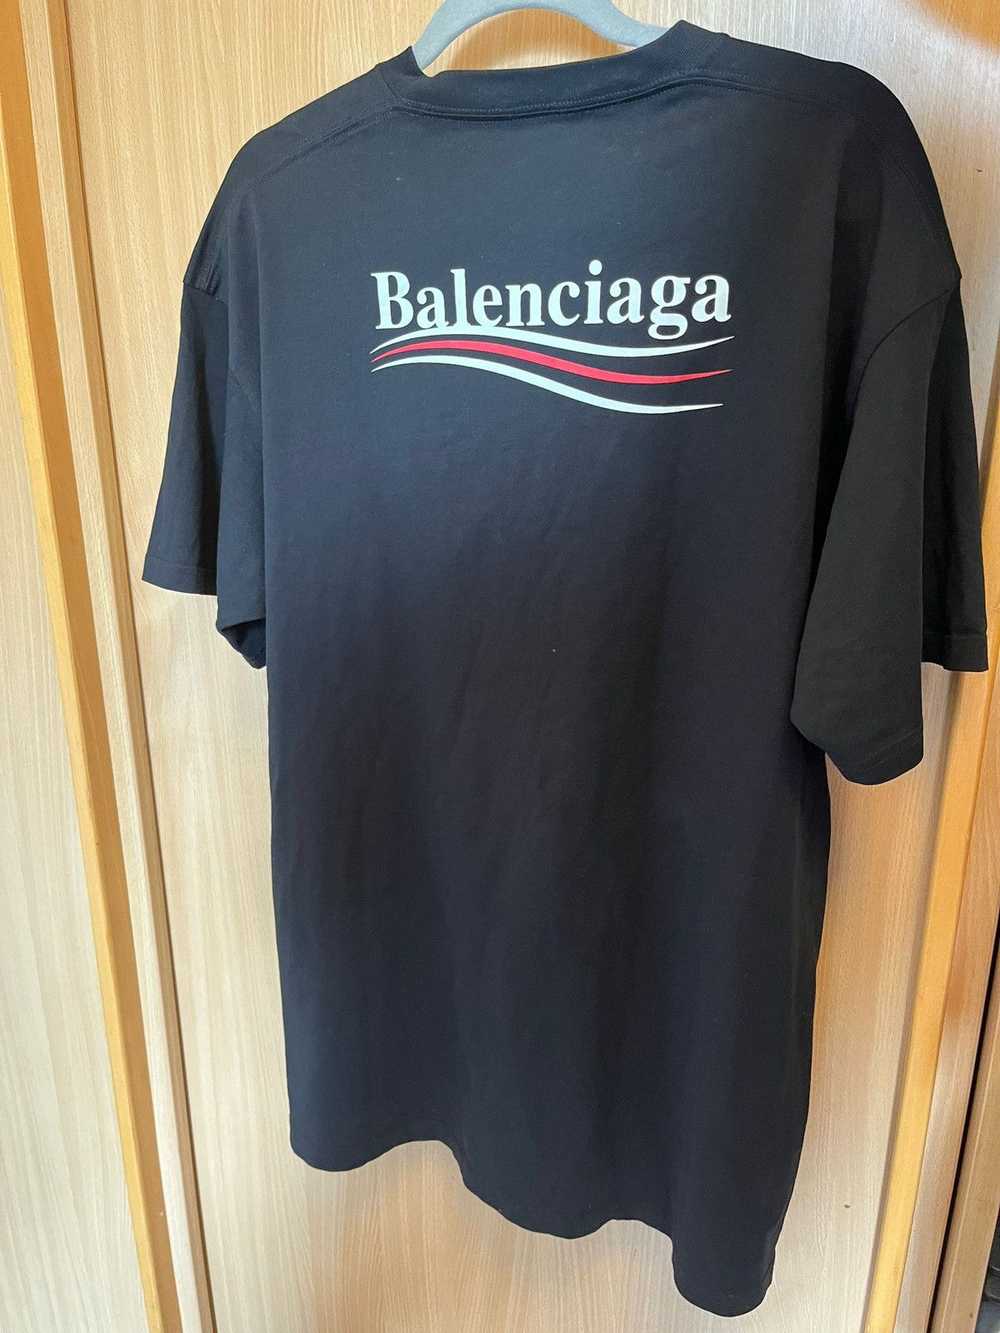 Balenciaga Balenciaga Campaign T-Shirt - image 3